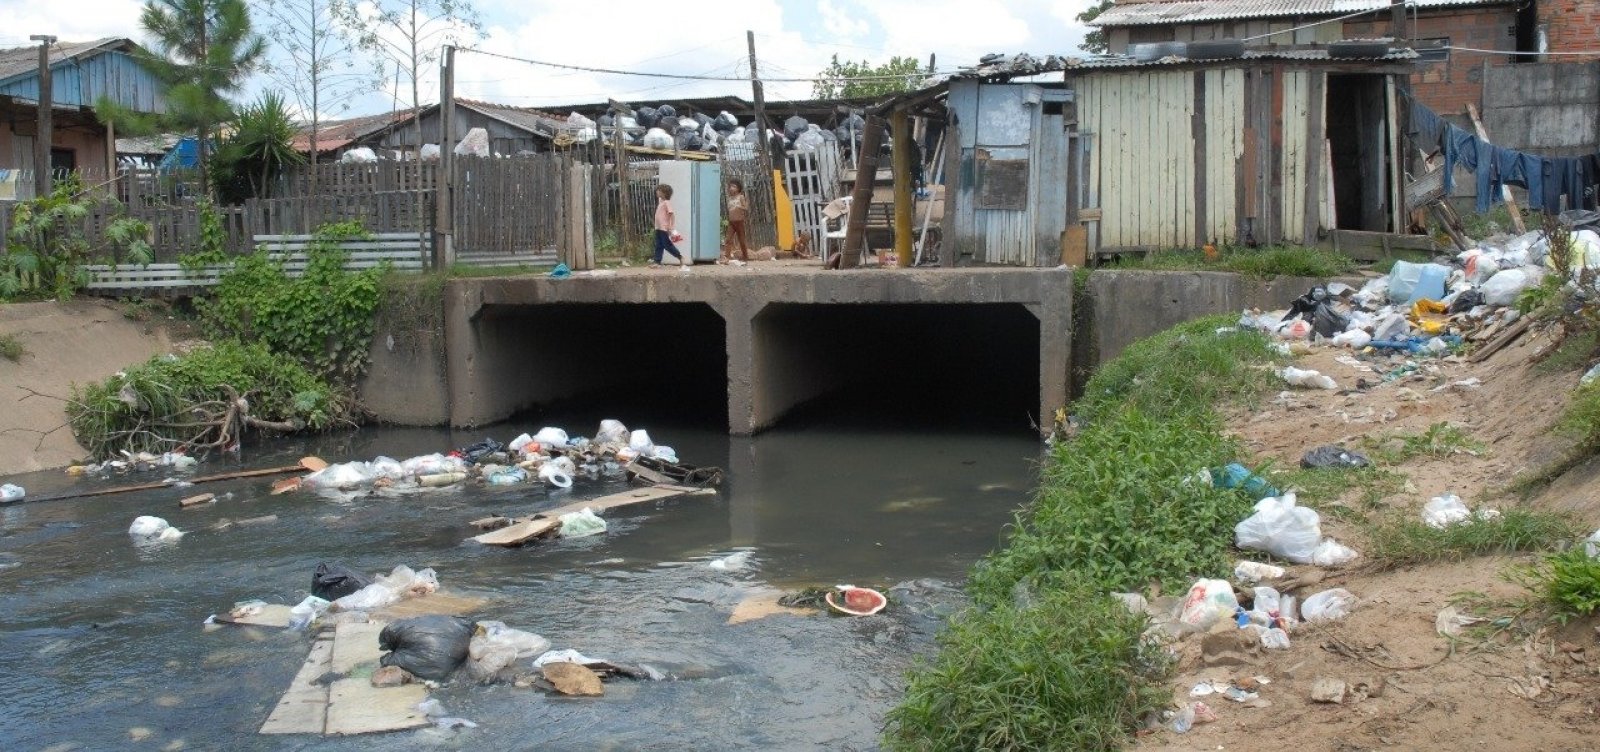 Brasil precisa aumentar em 62% investimentos em saneamento básico, diz estudo